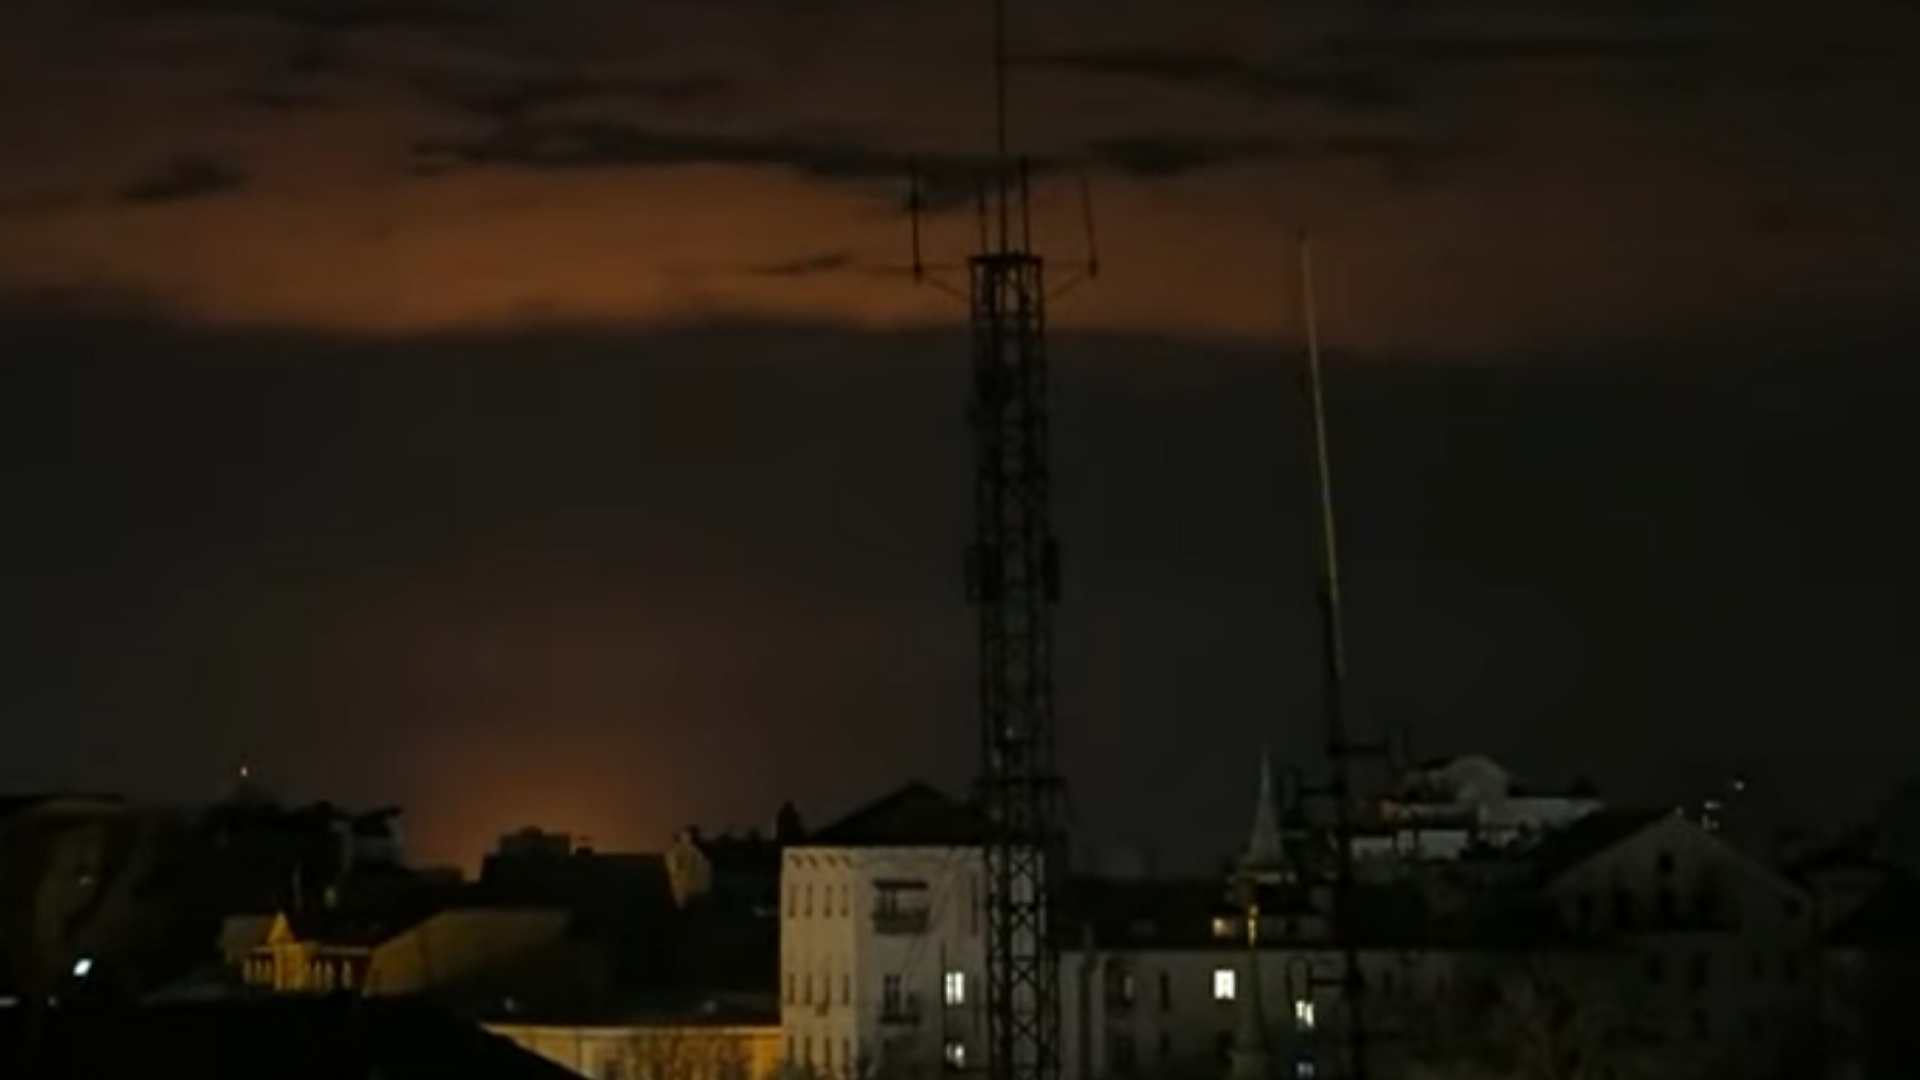 Novas explosões são registradas em Kiev. Foto do céu ucraniano com clarões laranja.